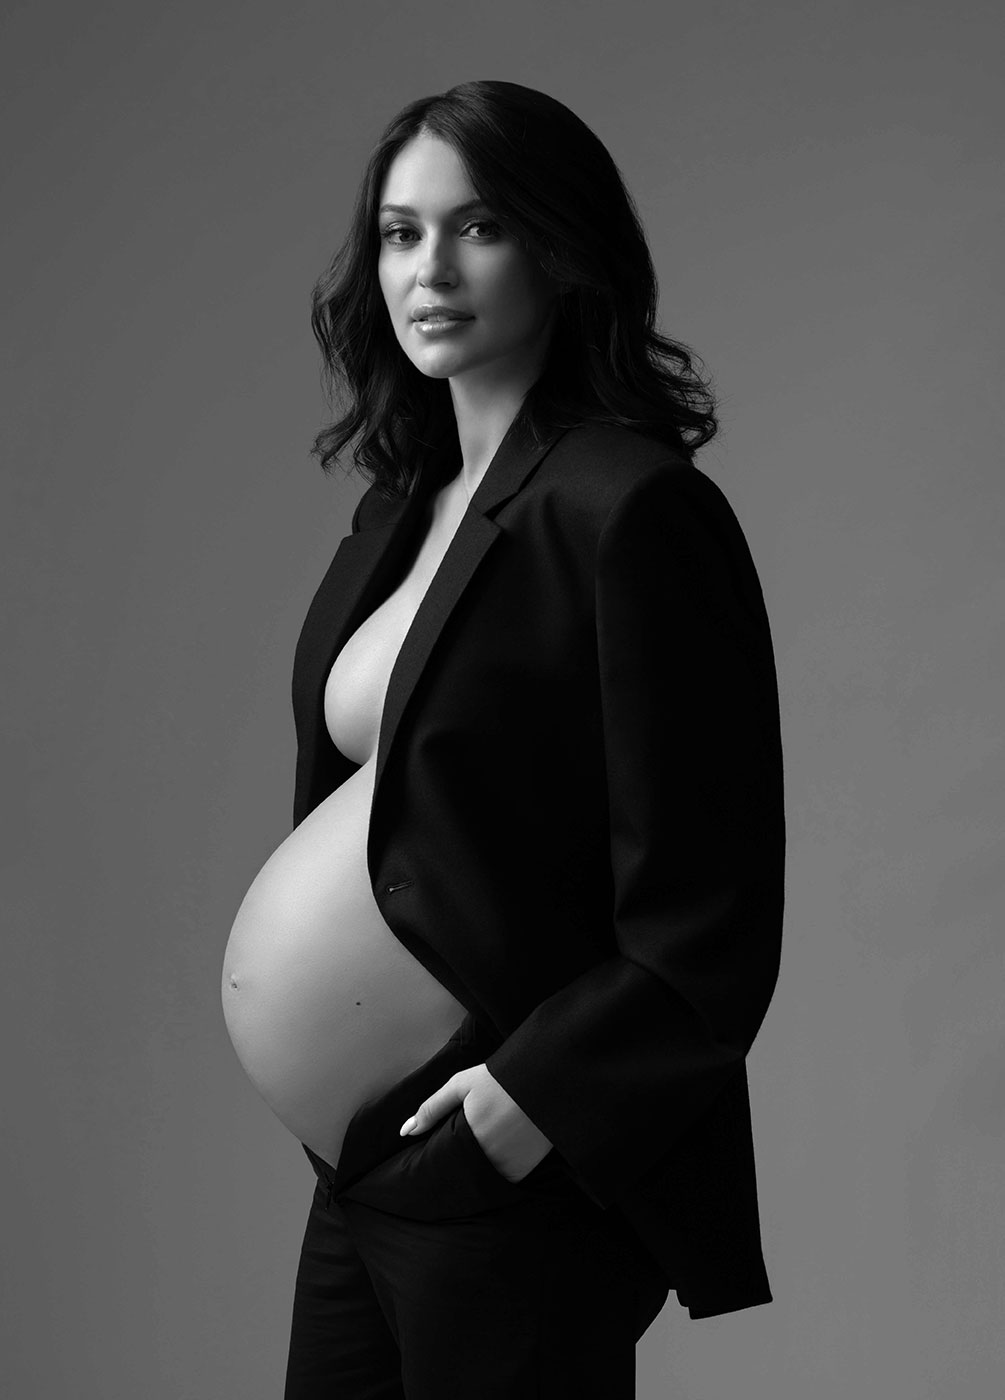 Pregnant woman wearing a blazer